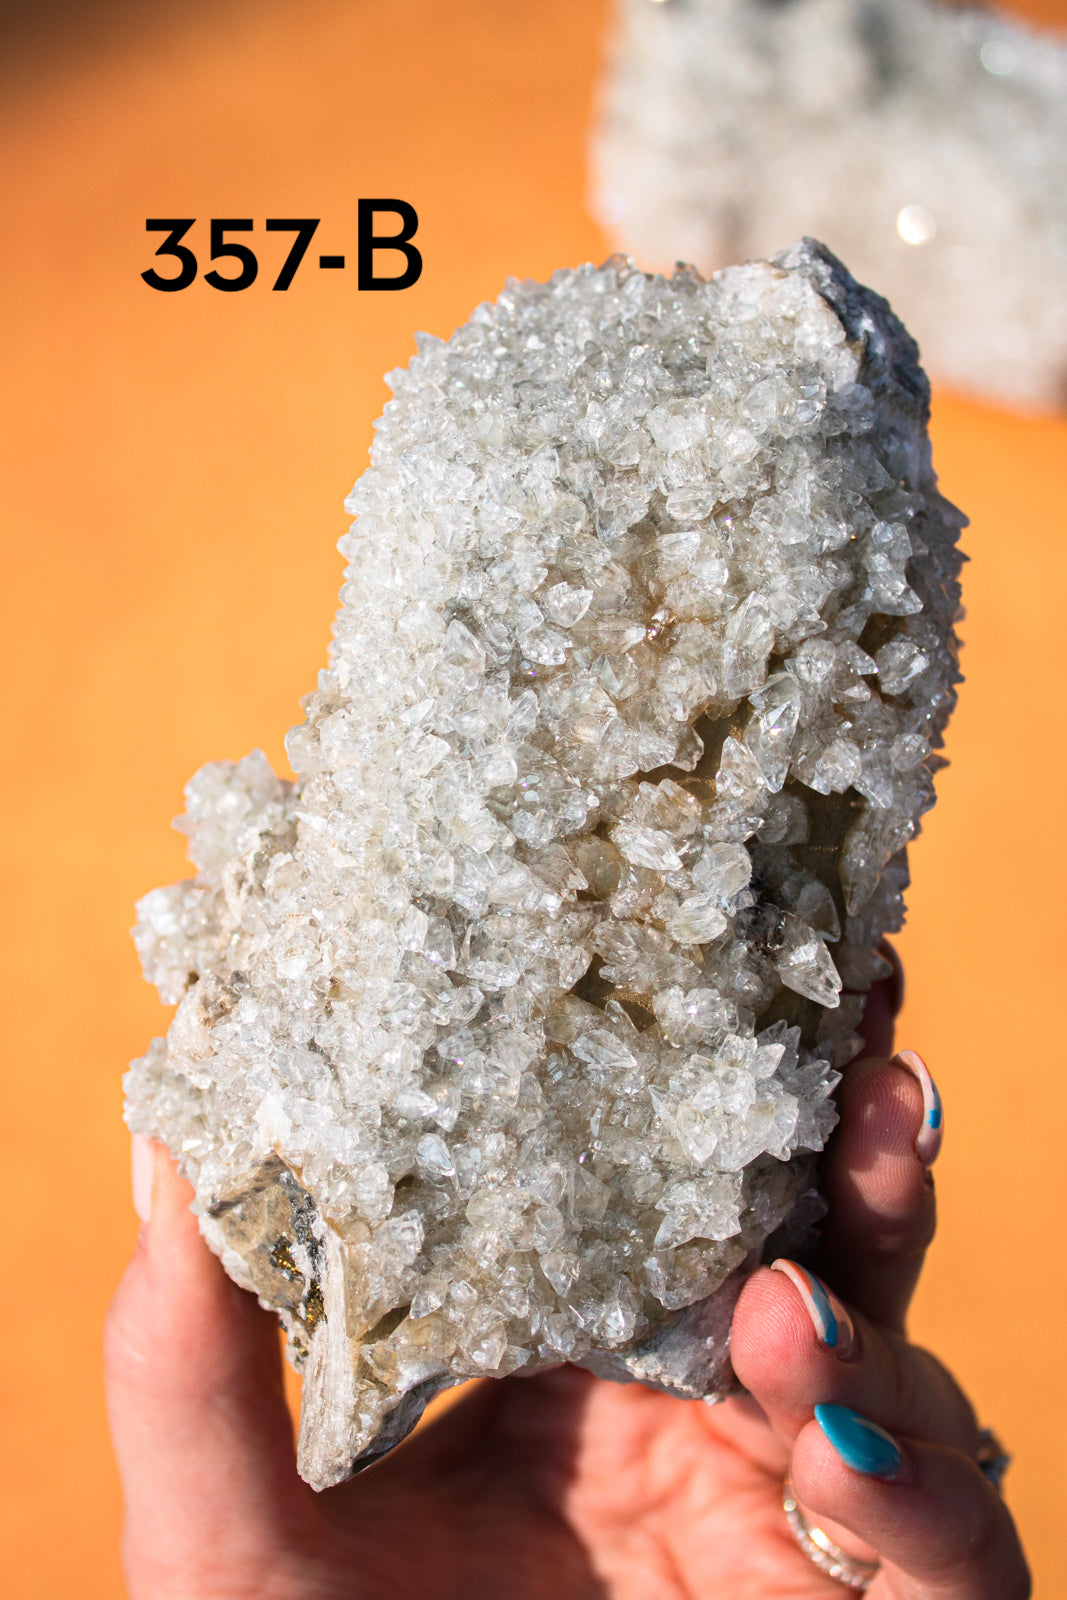 Extra Large Danburite with Calcite Specimens